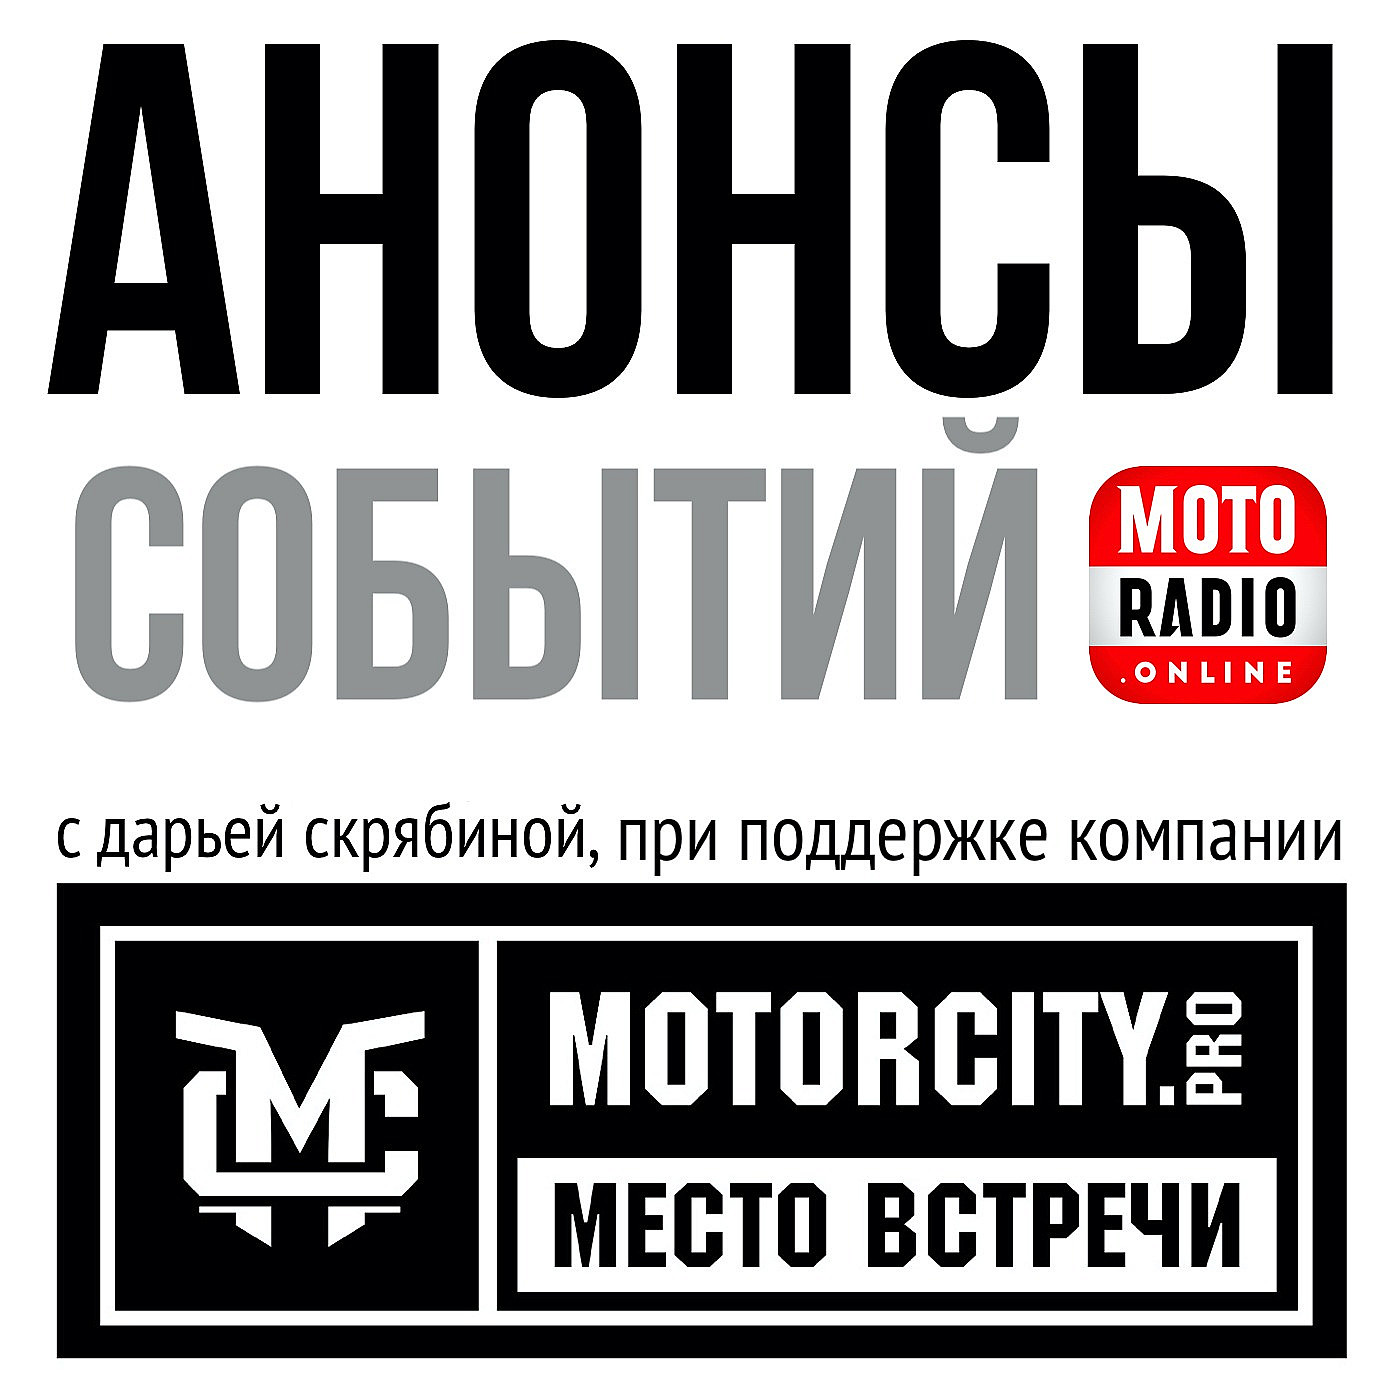 MOTORCITY представляет: о предстоящем открытии мотосезона в Петербурге.